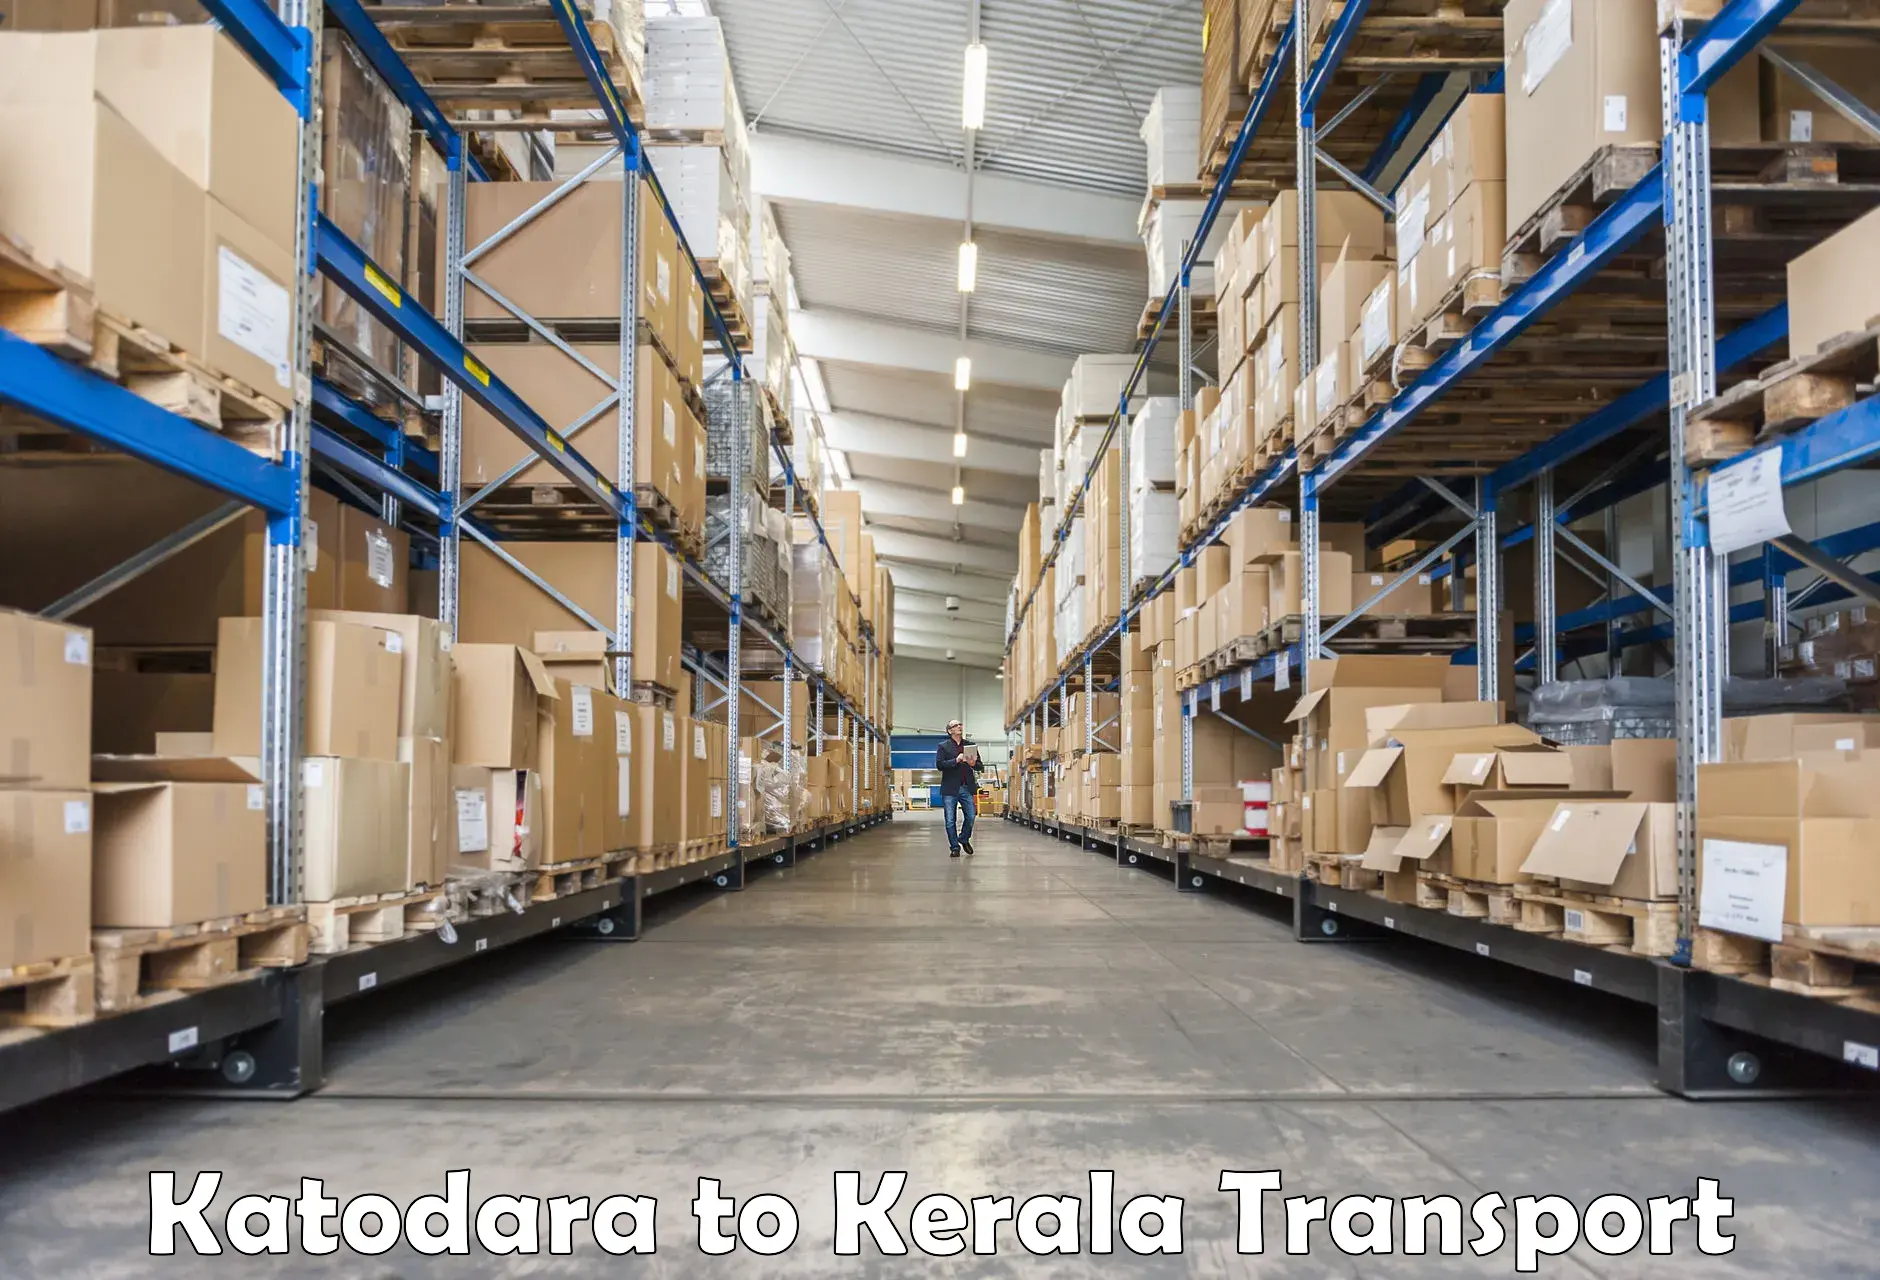 Transport in sharing in Katodara to Kuttikol